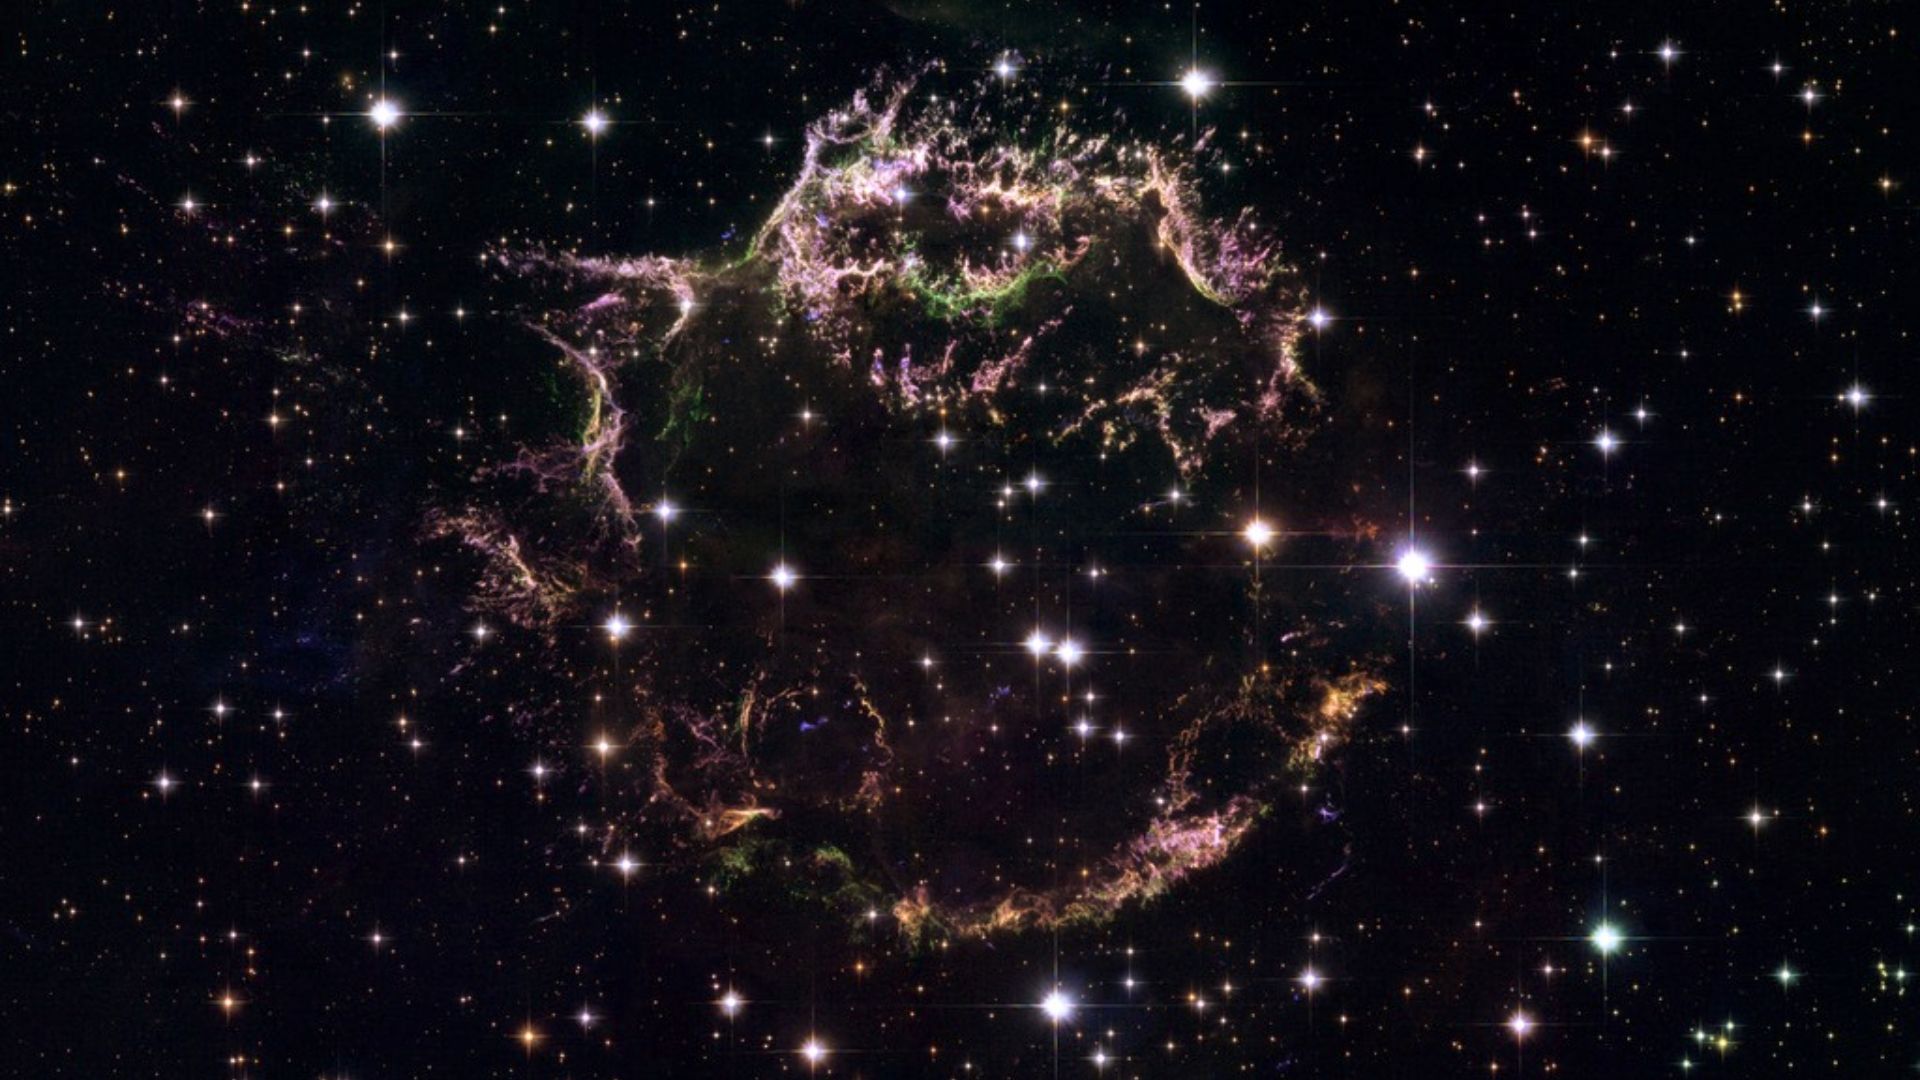 Cassiopeia A (Cas A) exibe os Cassiopeia A (Cas A) exibe os remanescentes da explosão de uma supernova, localizada a cerca de onze mil anos-luz de distância, na Constelação de Cassiopeia. Trata-se do remanescente de supernova mais jovem, com cerca de 340 anos, conhecido na Via Láctea. Sua estrutura complexa revela os fragmentos despedaçados de uma estrela, com uma espécie de anel quebrado de material estelar ejetado. Os redemoinhos de detritos brilham com o calor das ondas de choque da explosão. As cores indicam diferenças na composição química. Os filamentos verdes são ricos em oxigênio, os vermelhos e roxos são enxofre, e os azuis são compostos principalmente de hidrogênio e nitrogênio. Uma supernova como Cas A é o fim explosivo de uma estrela massiva que entra em colapso sob o peso da sua própria gravidade